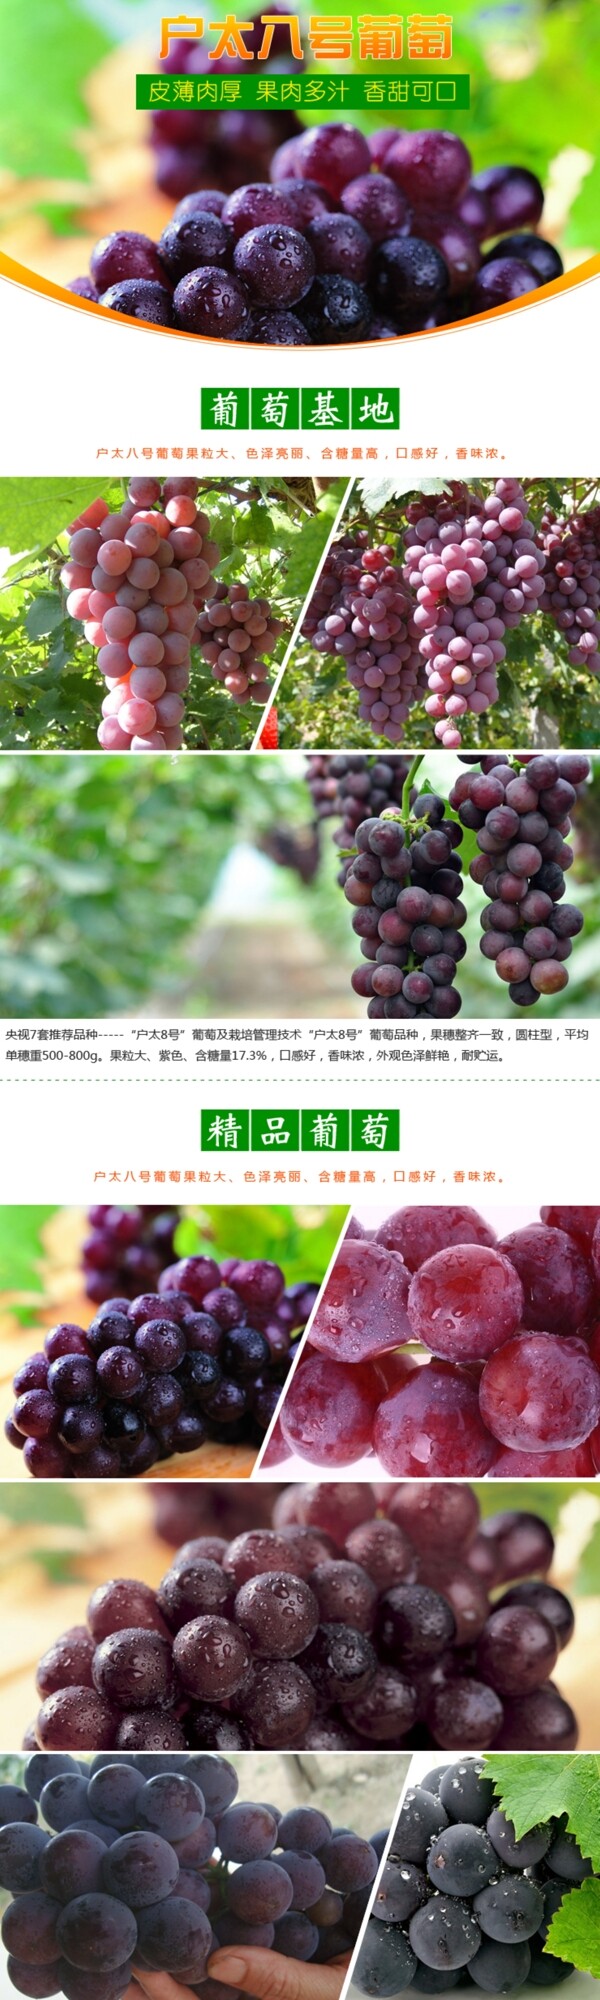 淘宝水果葡萄详情设计图片